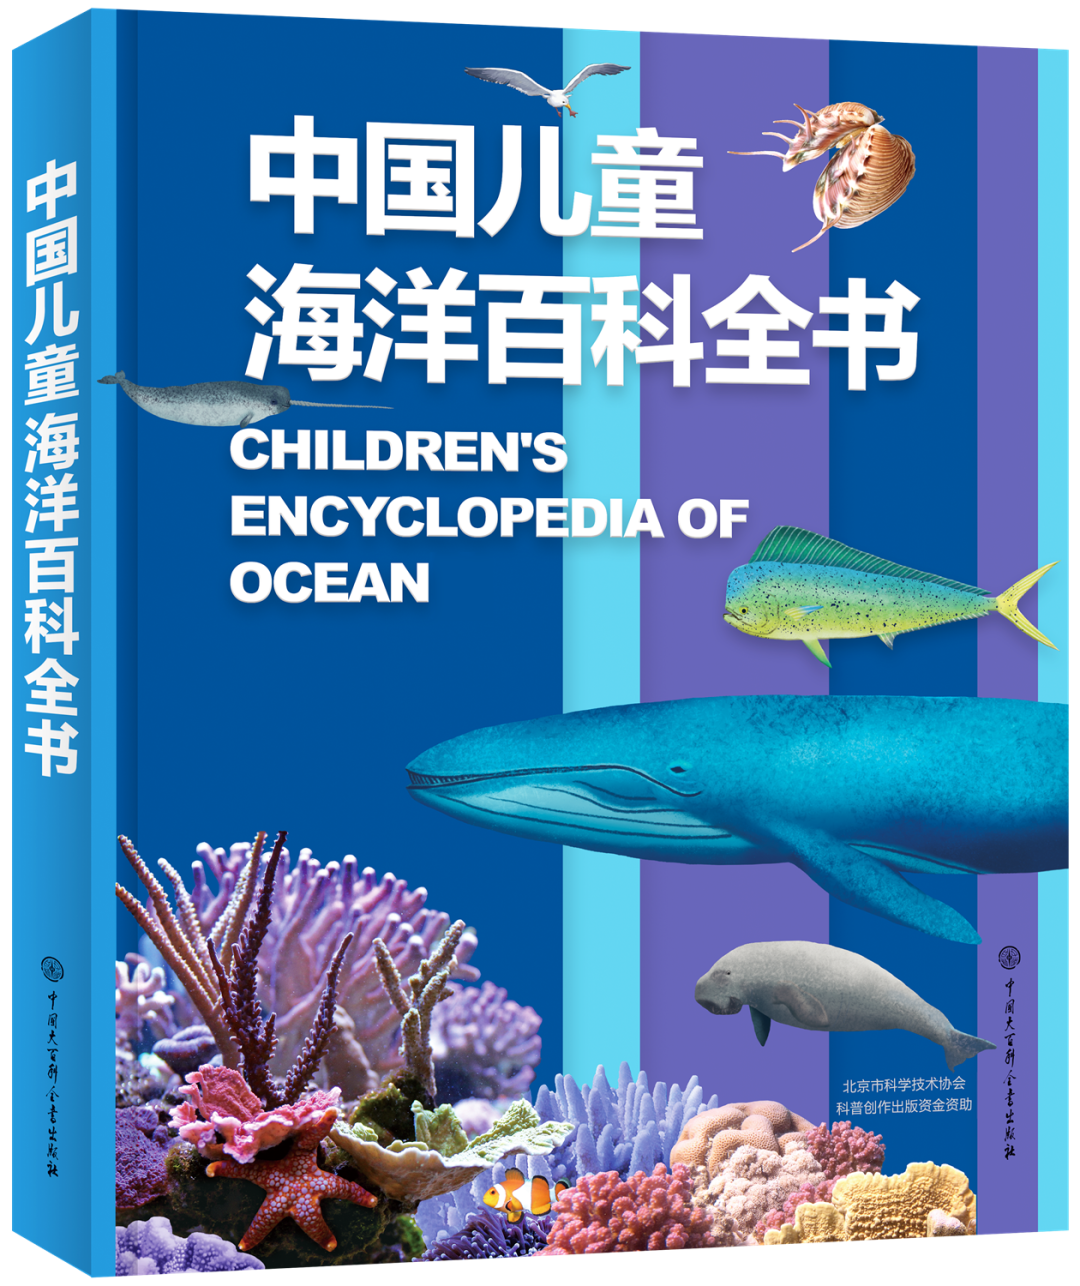 《中国儿童海洋百科全书》<br>中国大百科全书出版社<br><br>